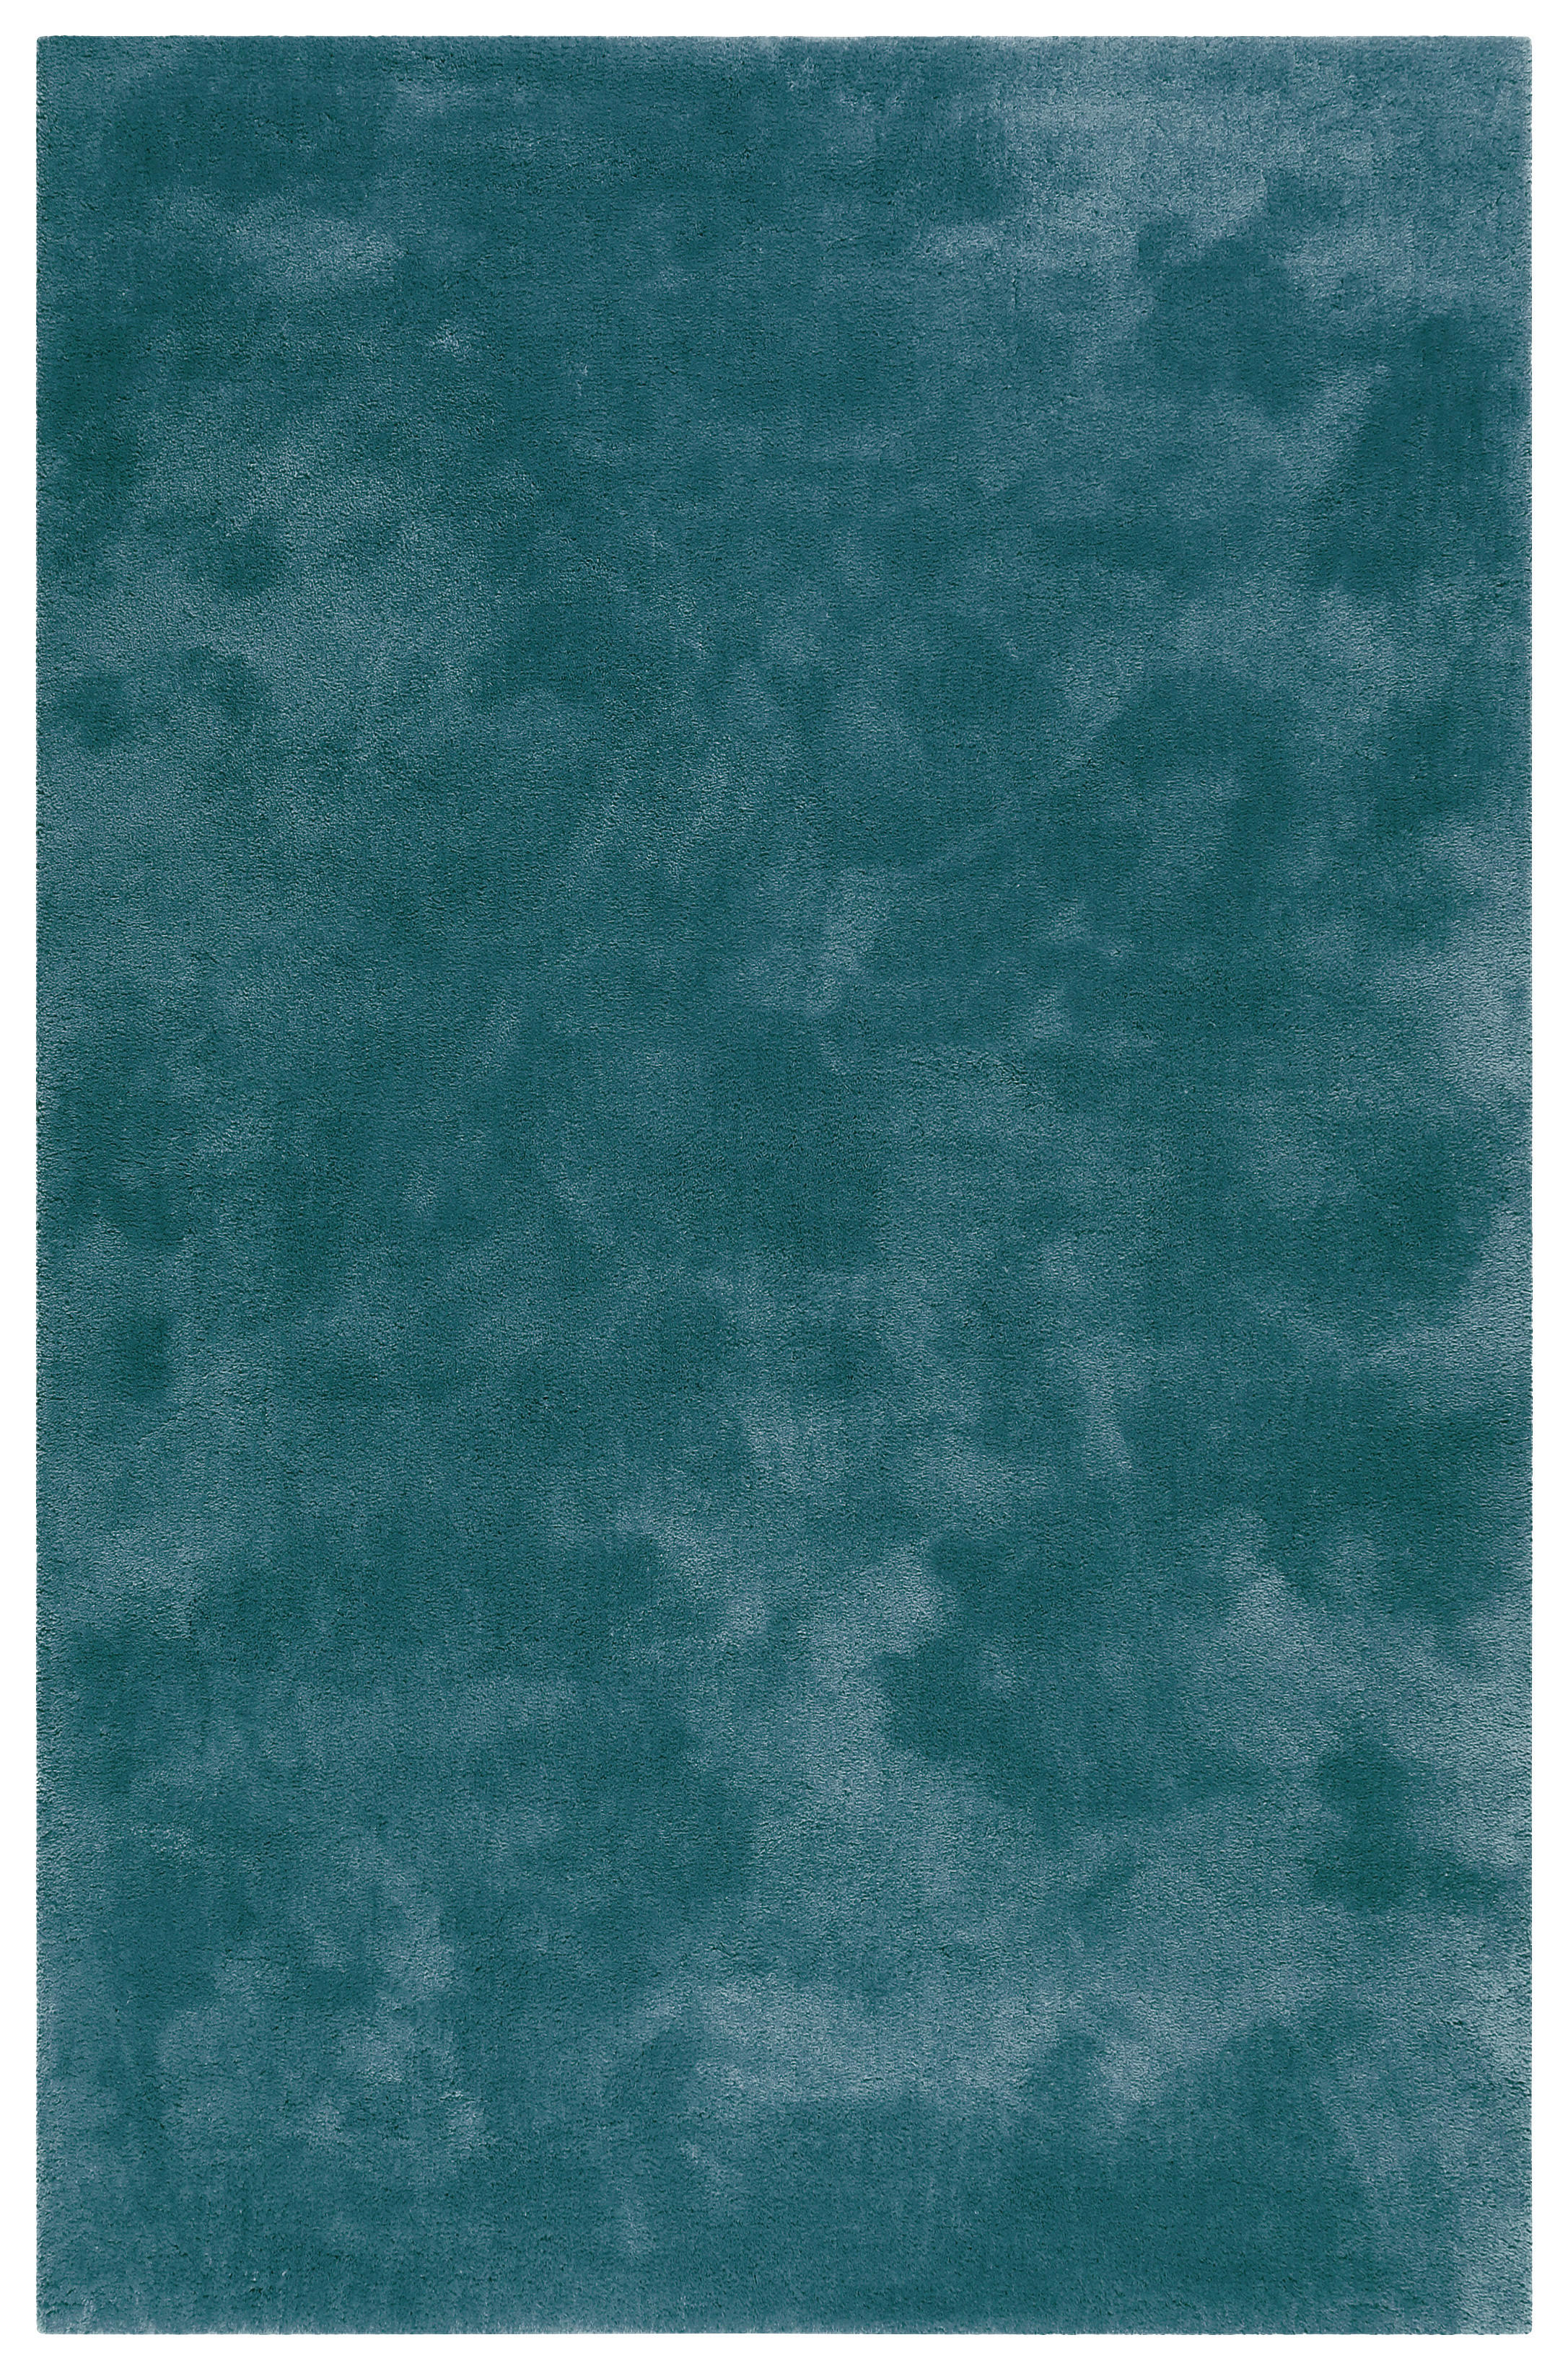 HOCHFLORTEPPICH 130/190 cm Relaxx  - Smaragdgrün, Basics, Textil (130/190cm) - Esprit